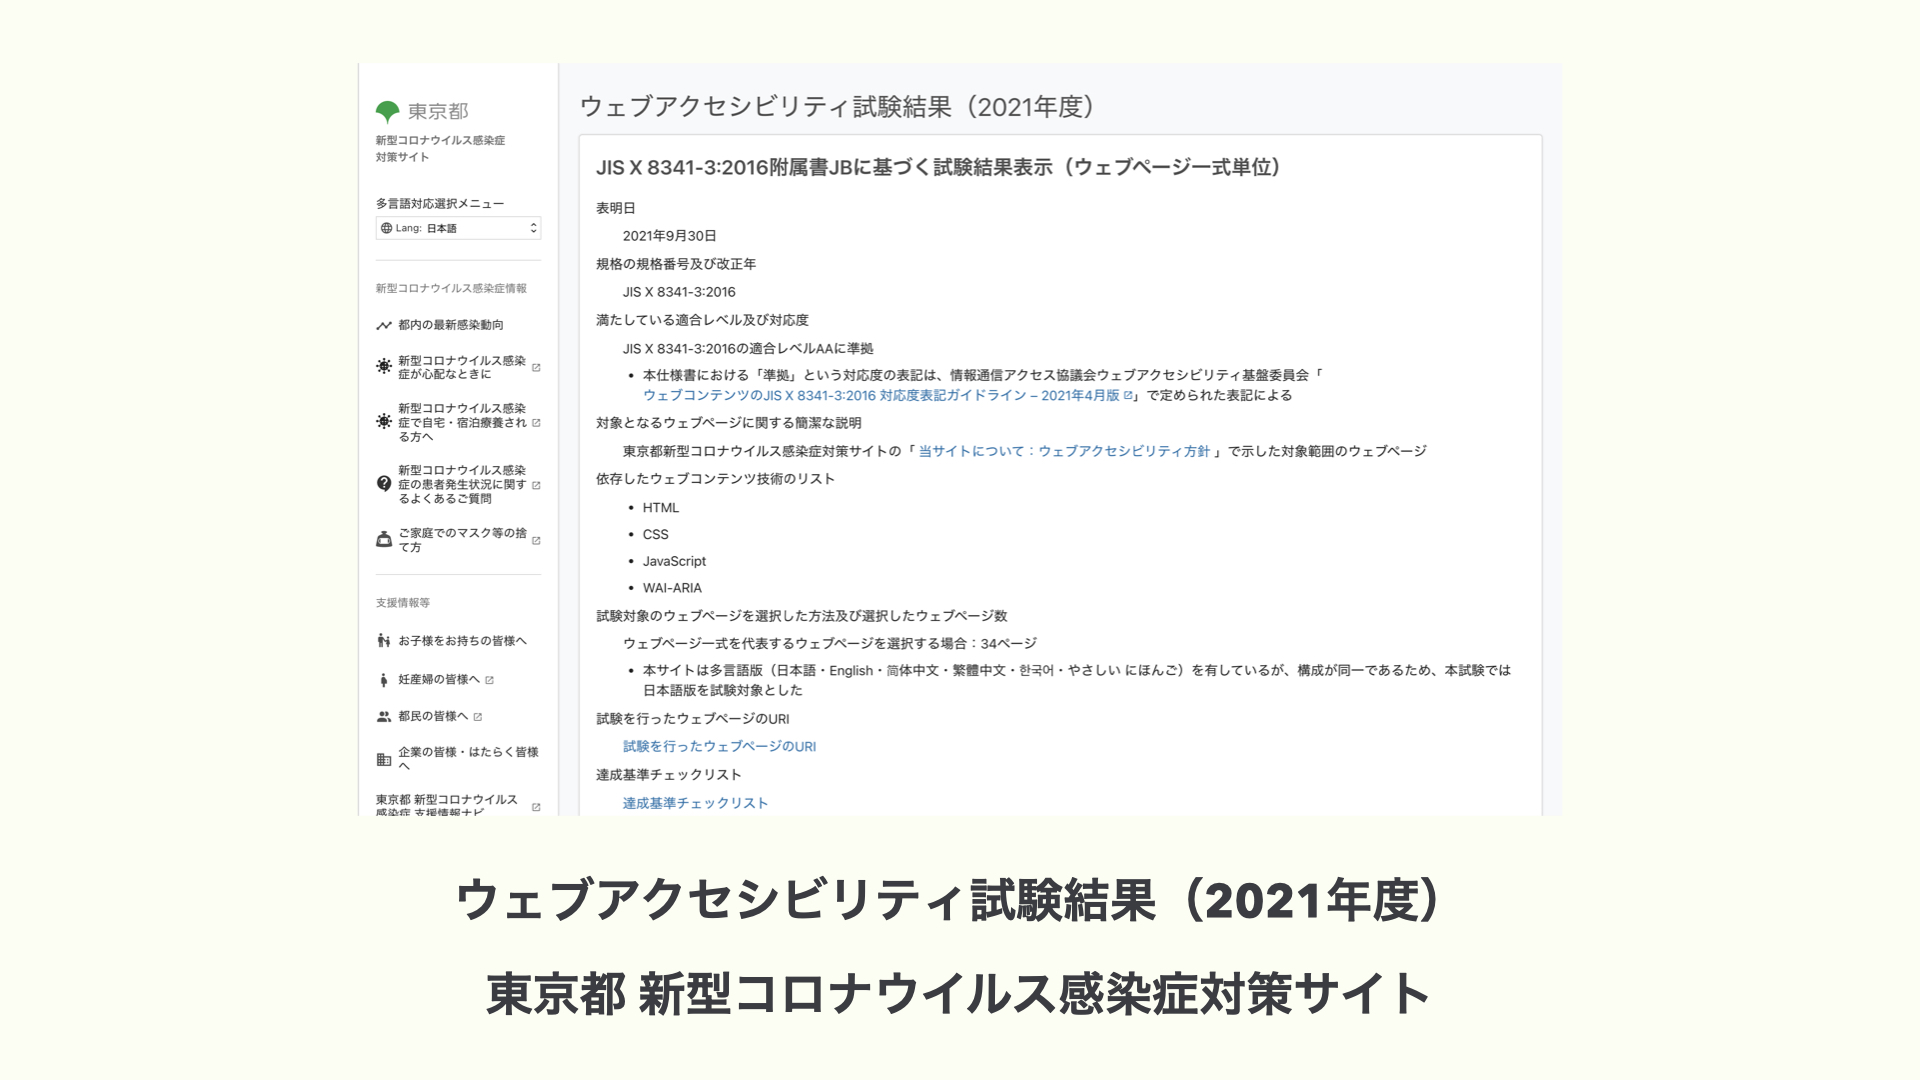 ウェブアクセシビリティ試験結果（2021年度）東京都 新型コロナウイルス感染症対策サイト